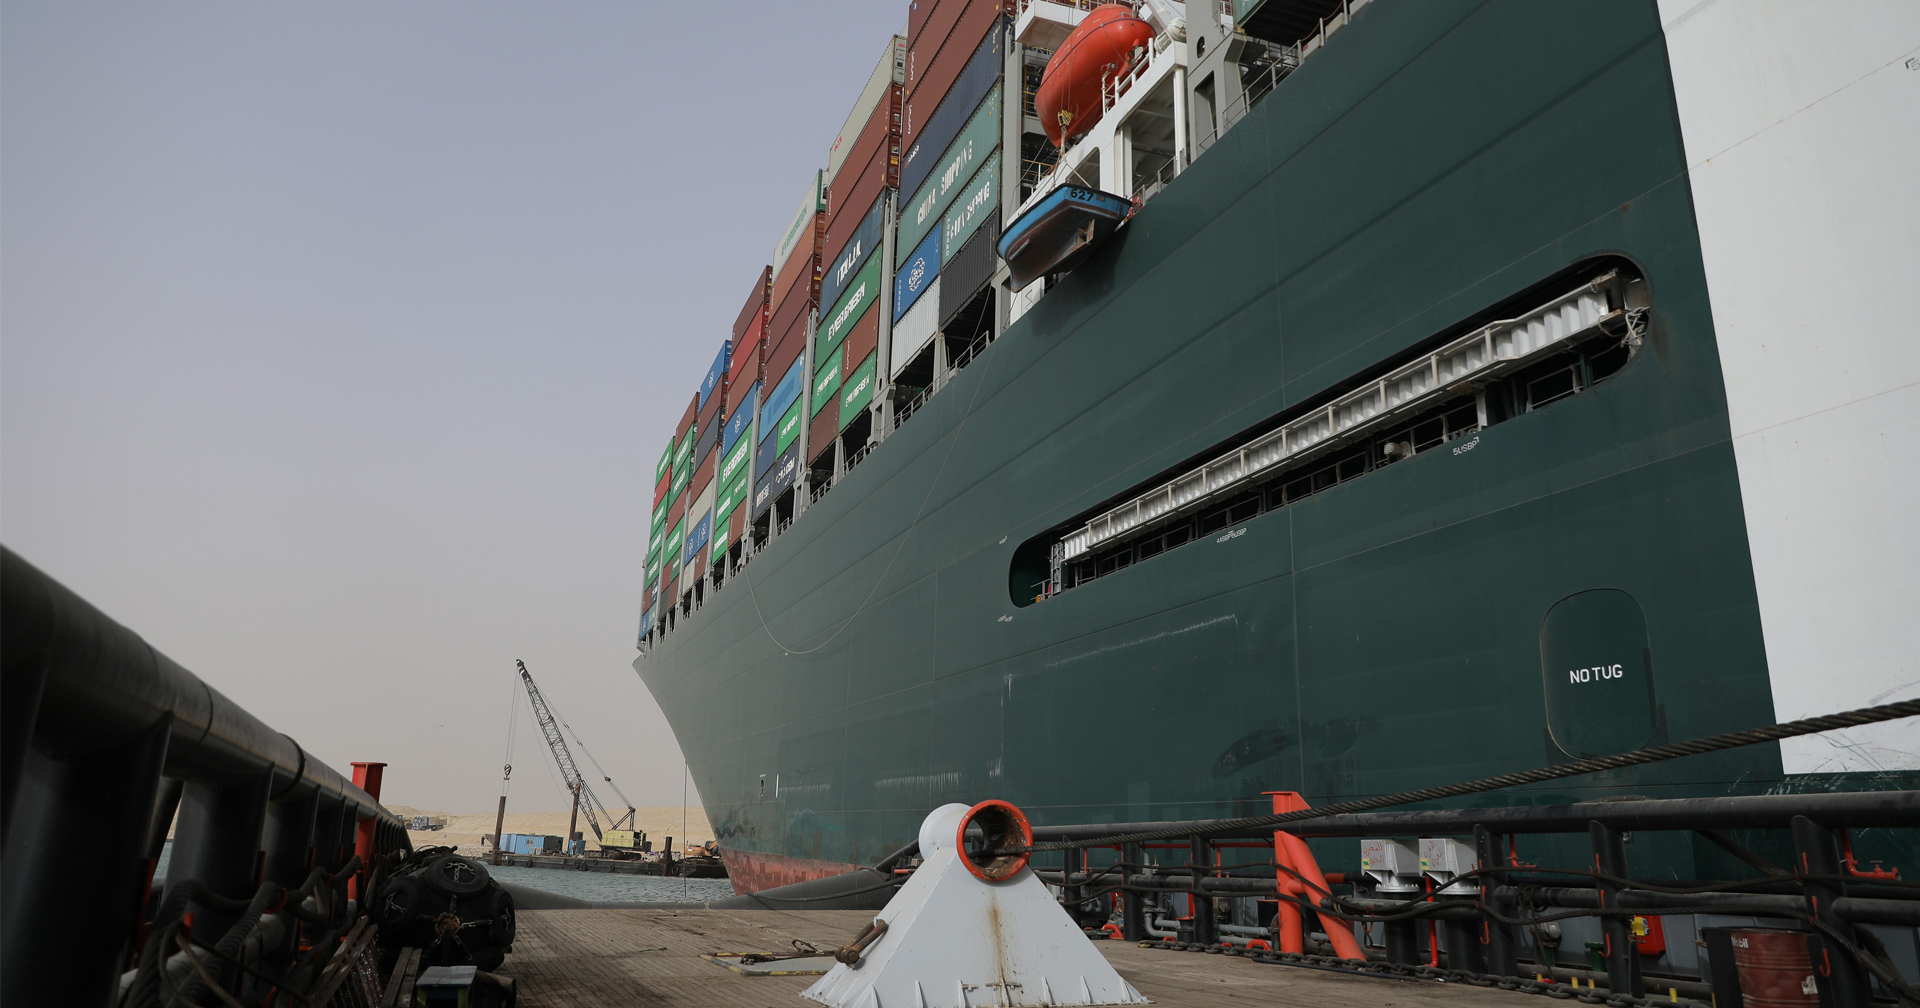 เรือส่งสินค้าลำยักษ์ขวาง ‘คลองสุเอซ’ สะเทือนขนส่งสินค้าทั่วโลก